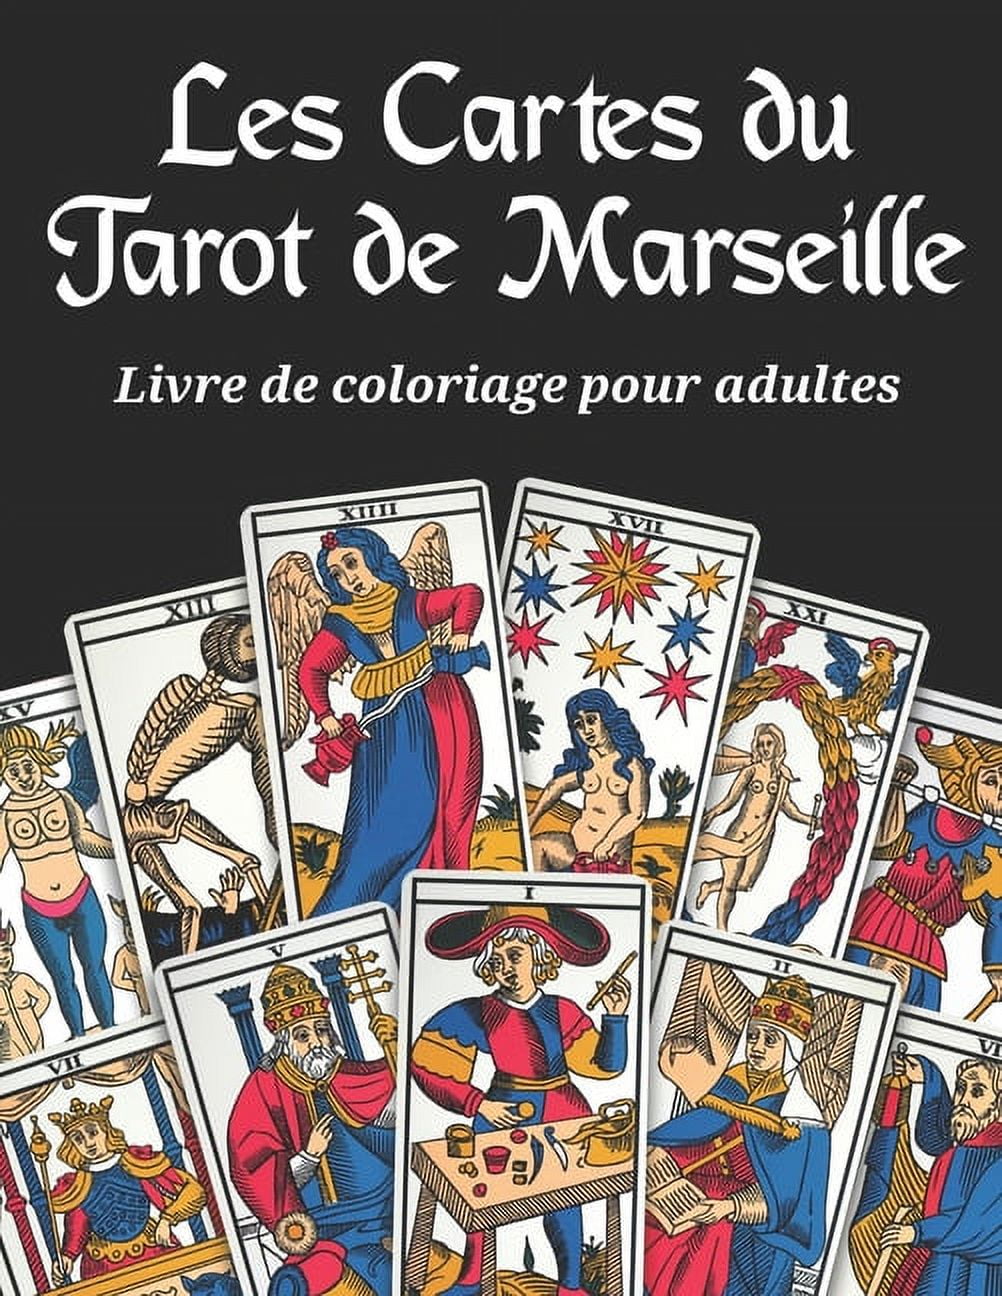 Les Cartes du Tarot de Marseille - Livre de coloriage pour adultes: 22  arcanes à colorier sur fond noir du grand jeu divinatoire français le tarot  de 